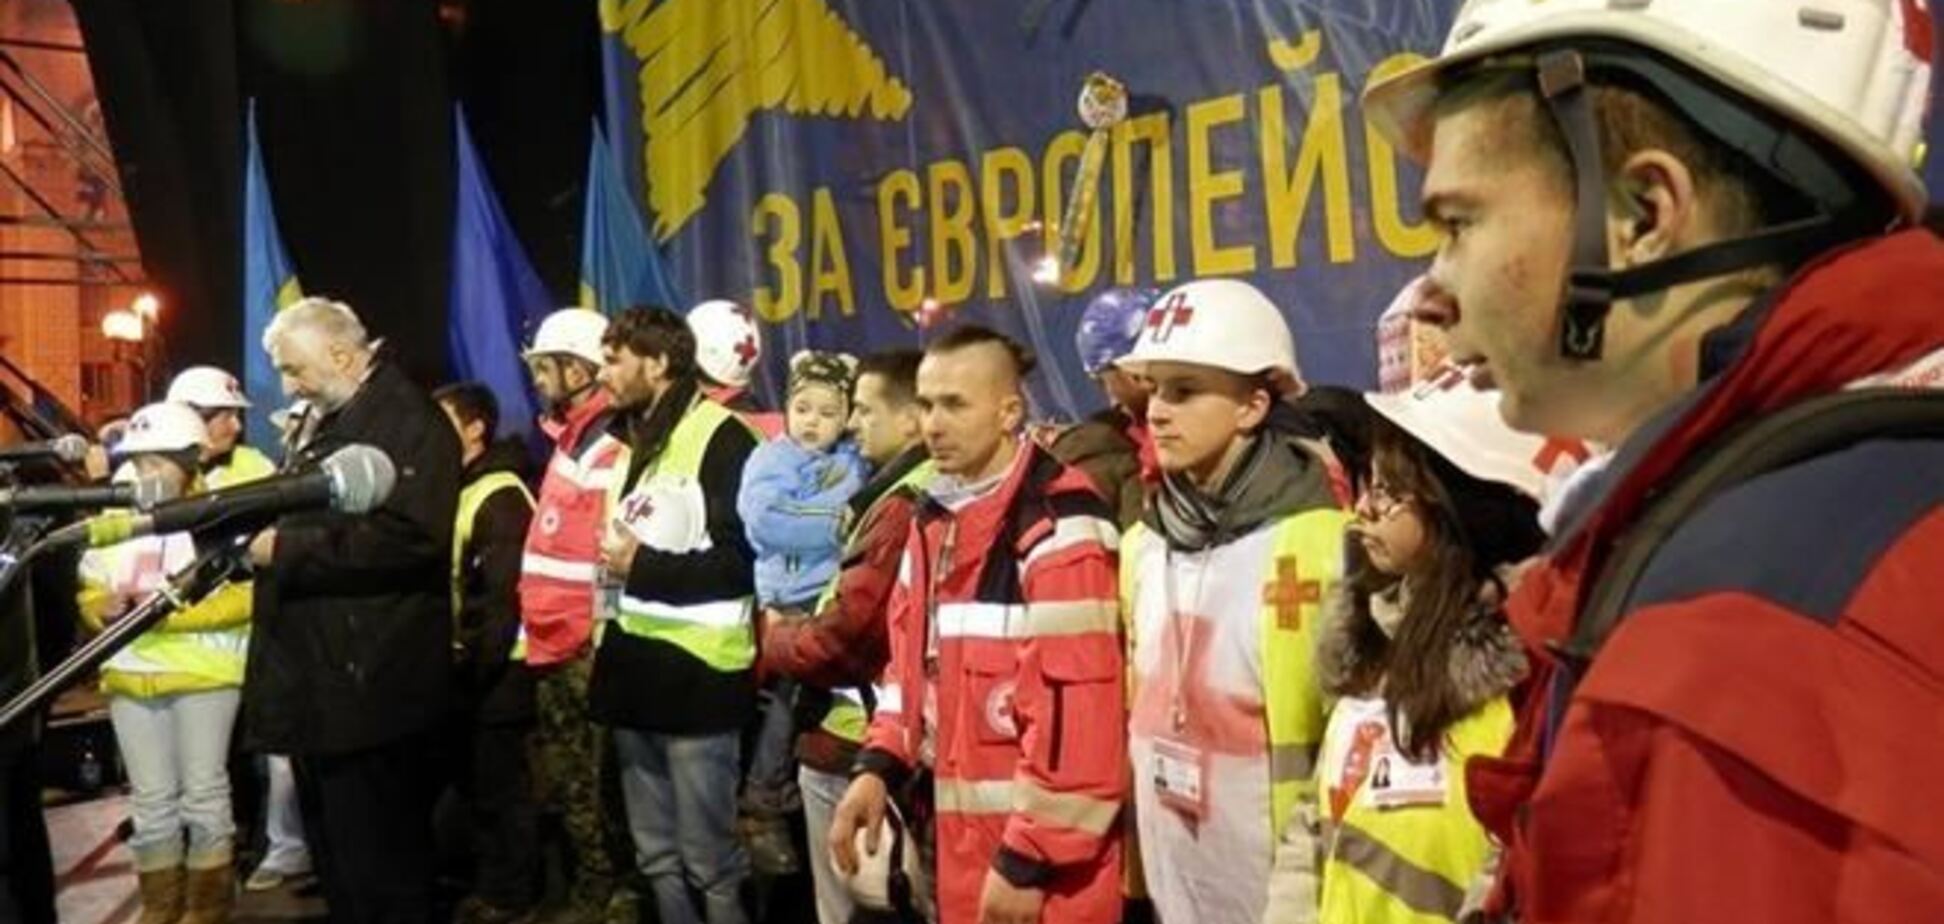 Медслужба Майдану надала допомогу понад 70 тис. осіб за два місяці